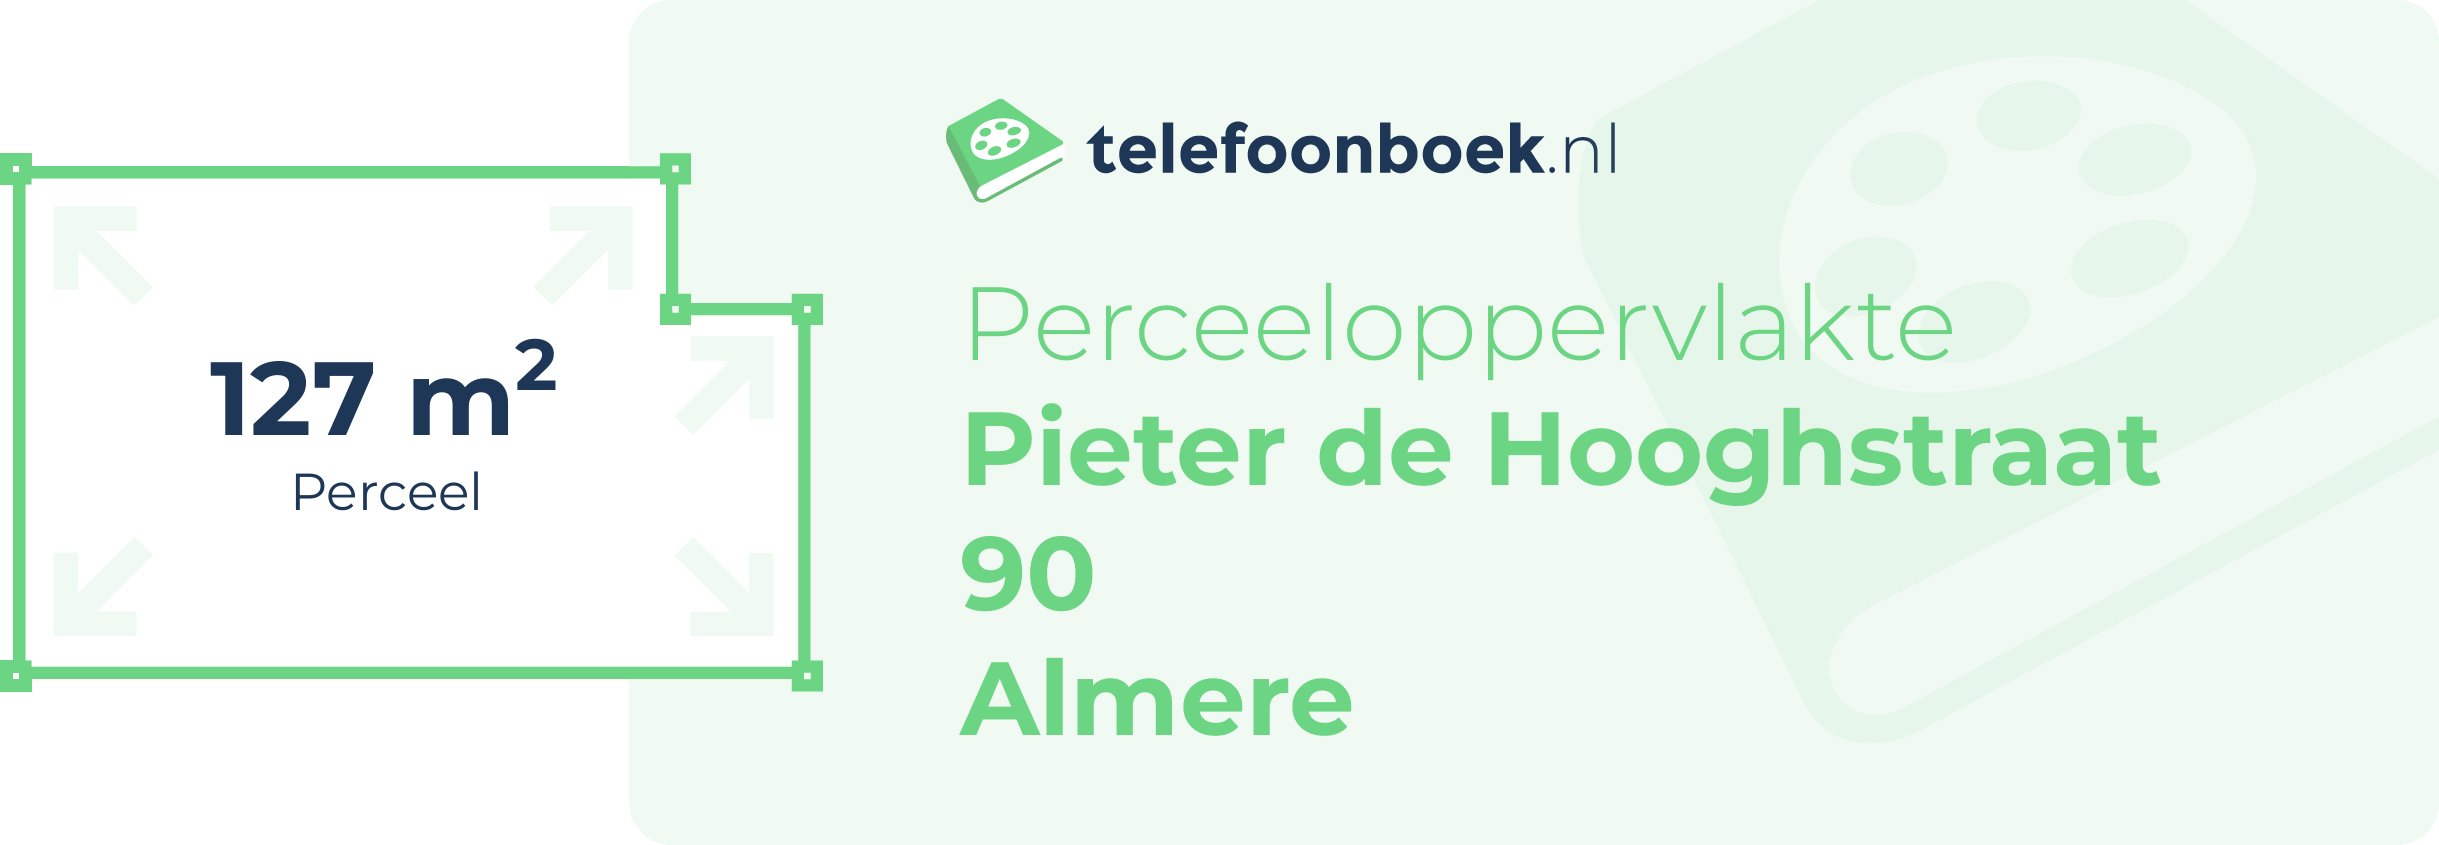 Perceeloppervlakte Pieter De Hooghstraat 90 Almere